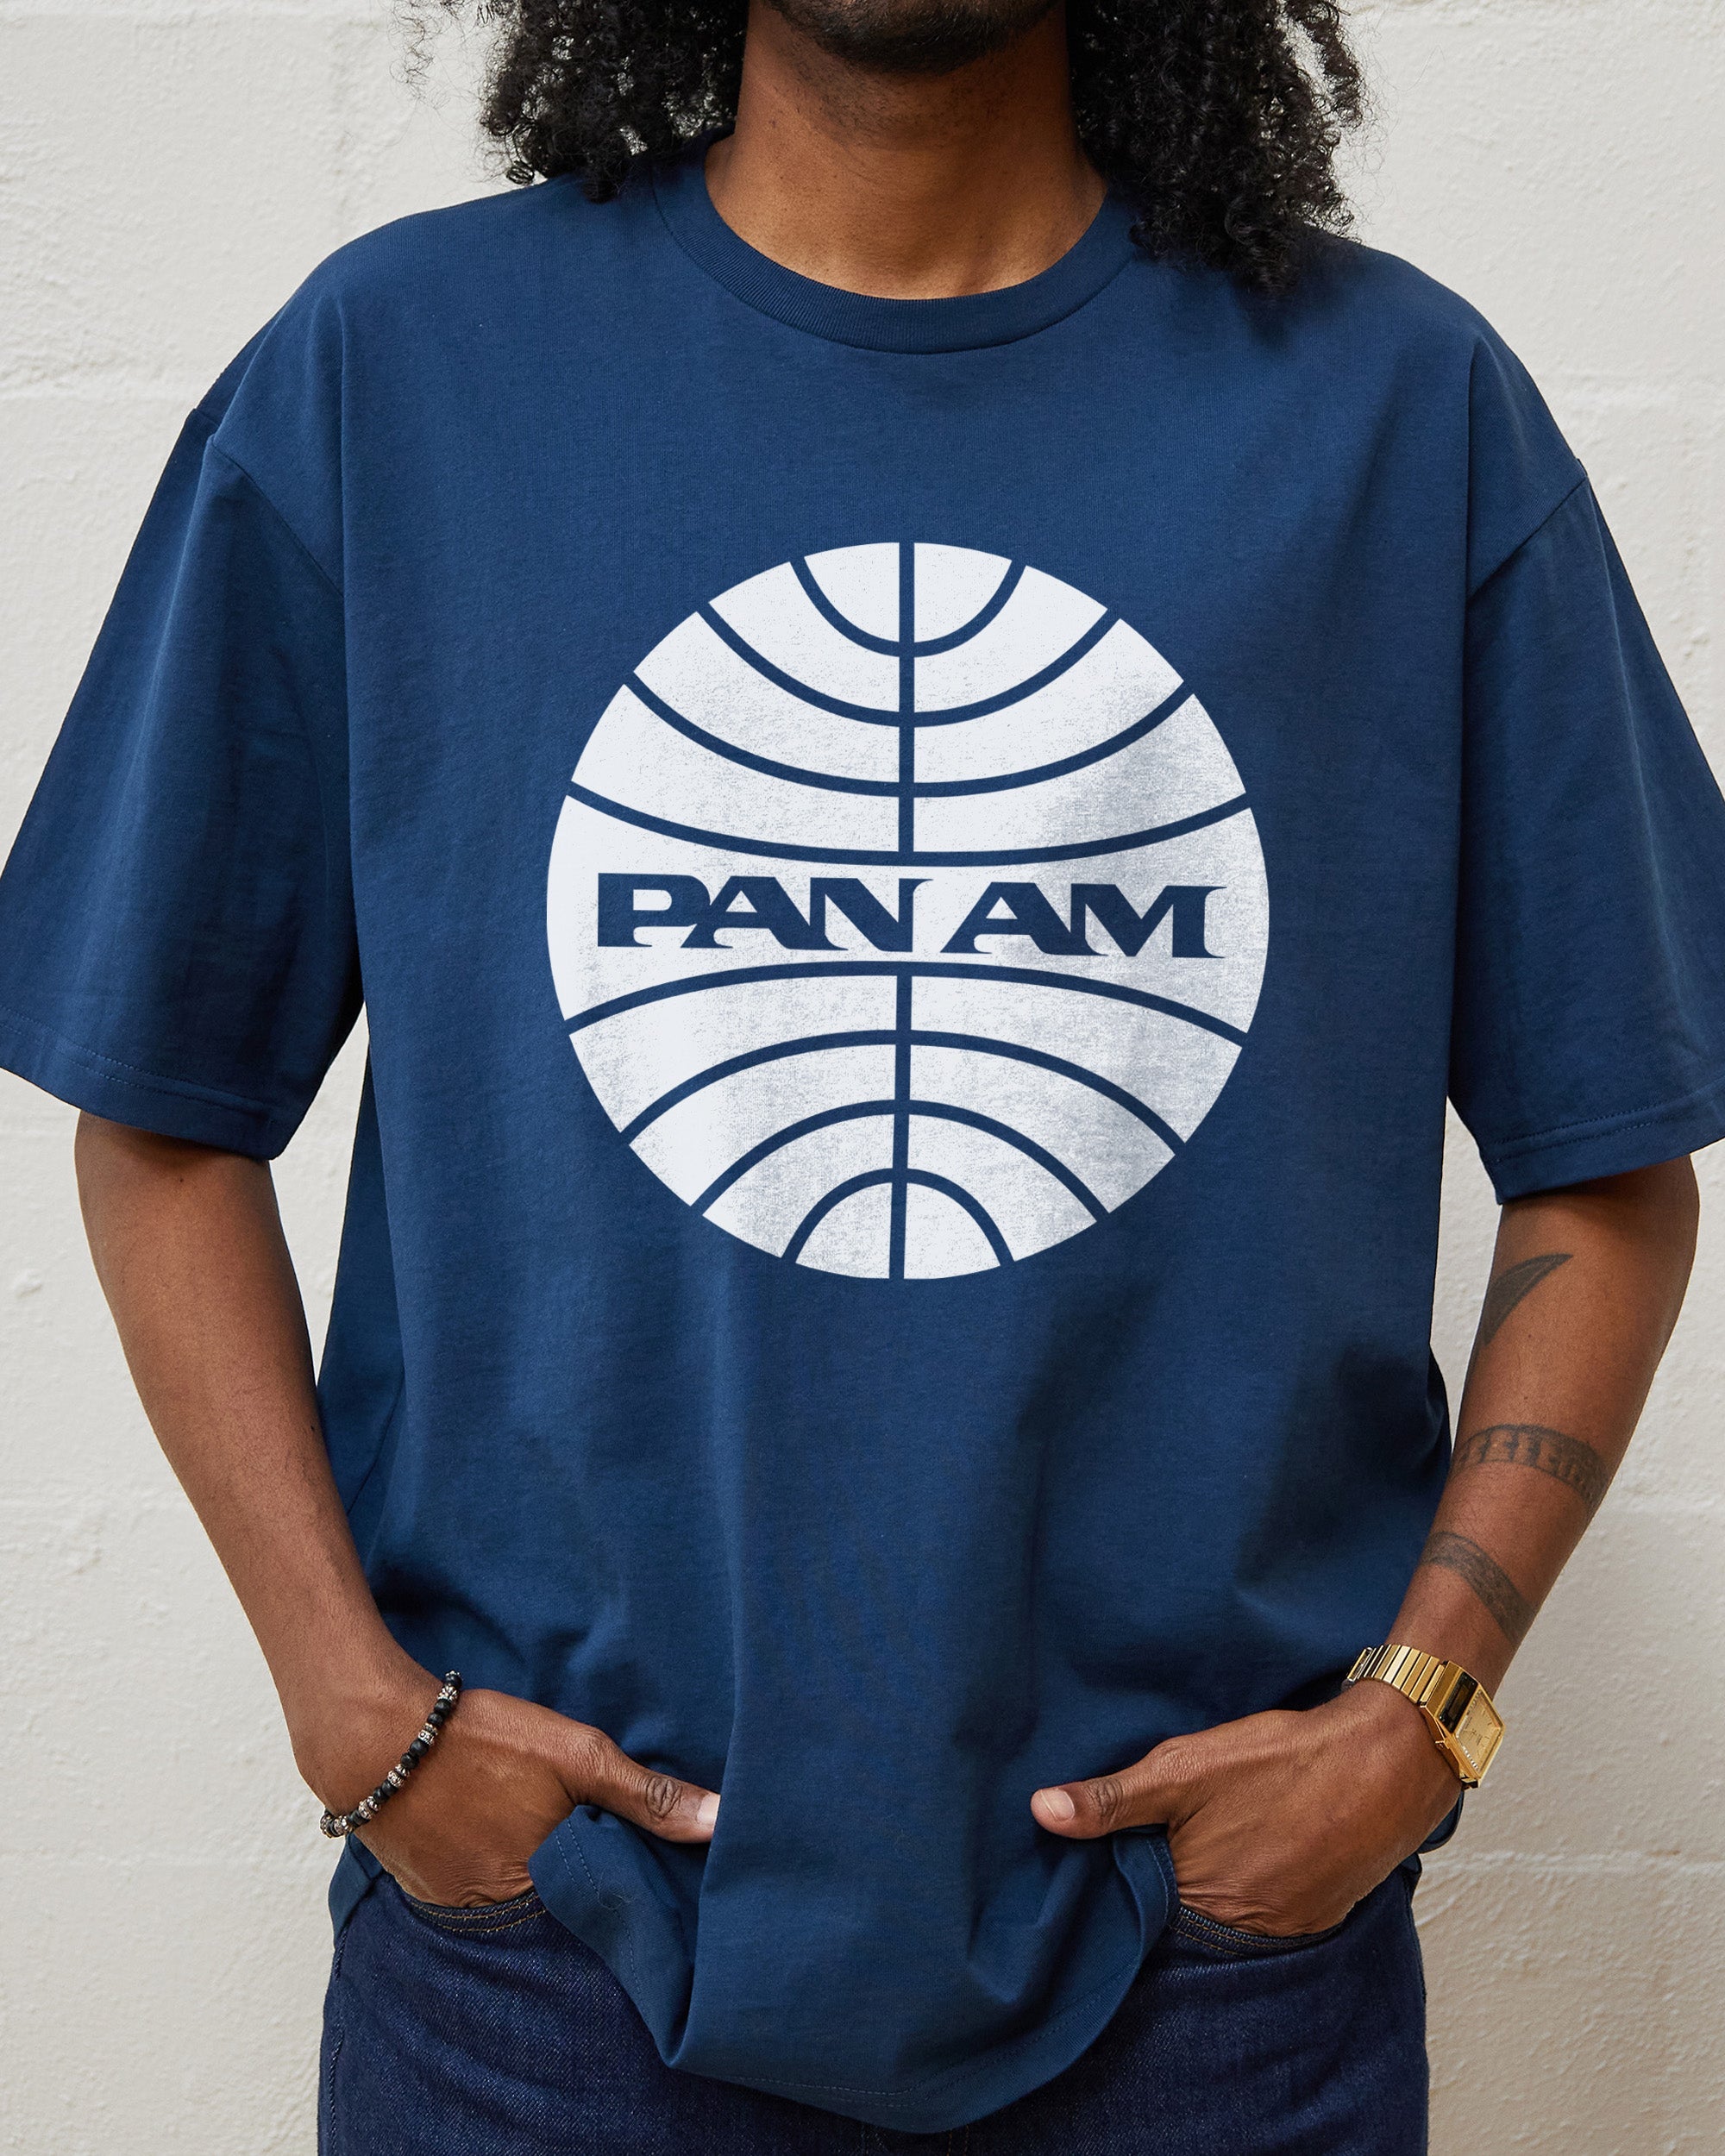 Pan Am T-Shirt Australia Online Navy